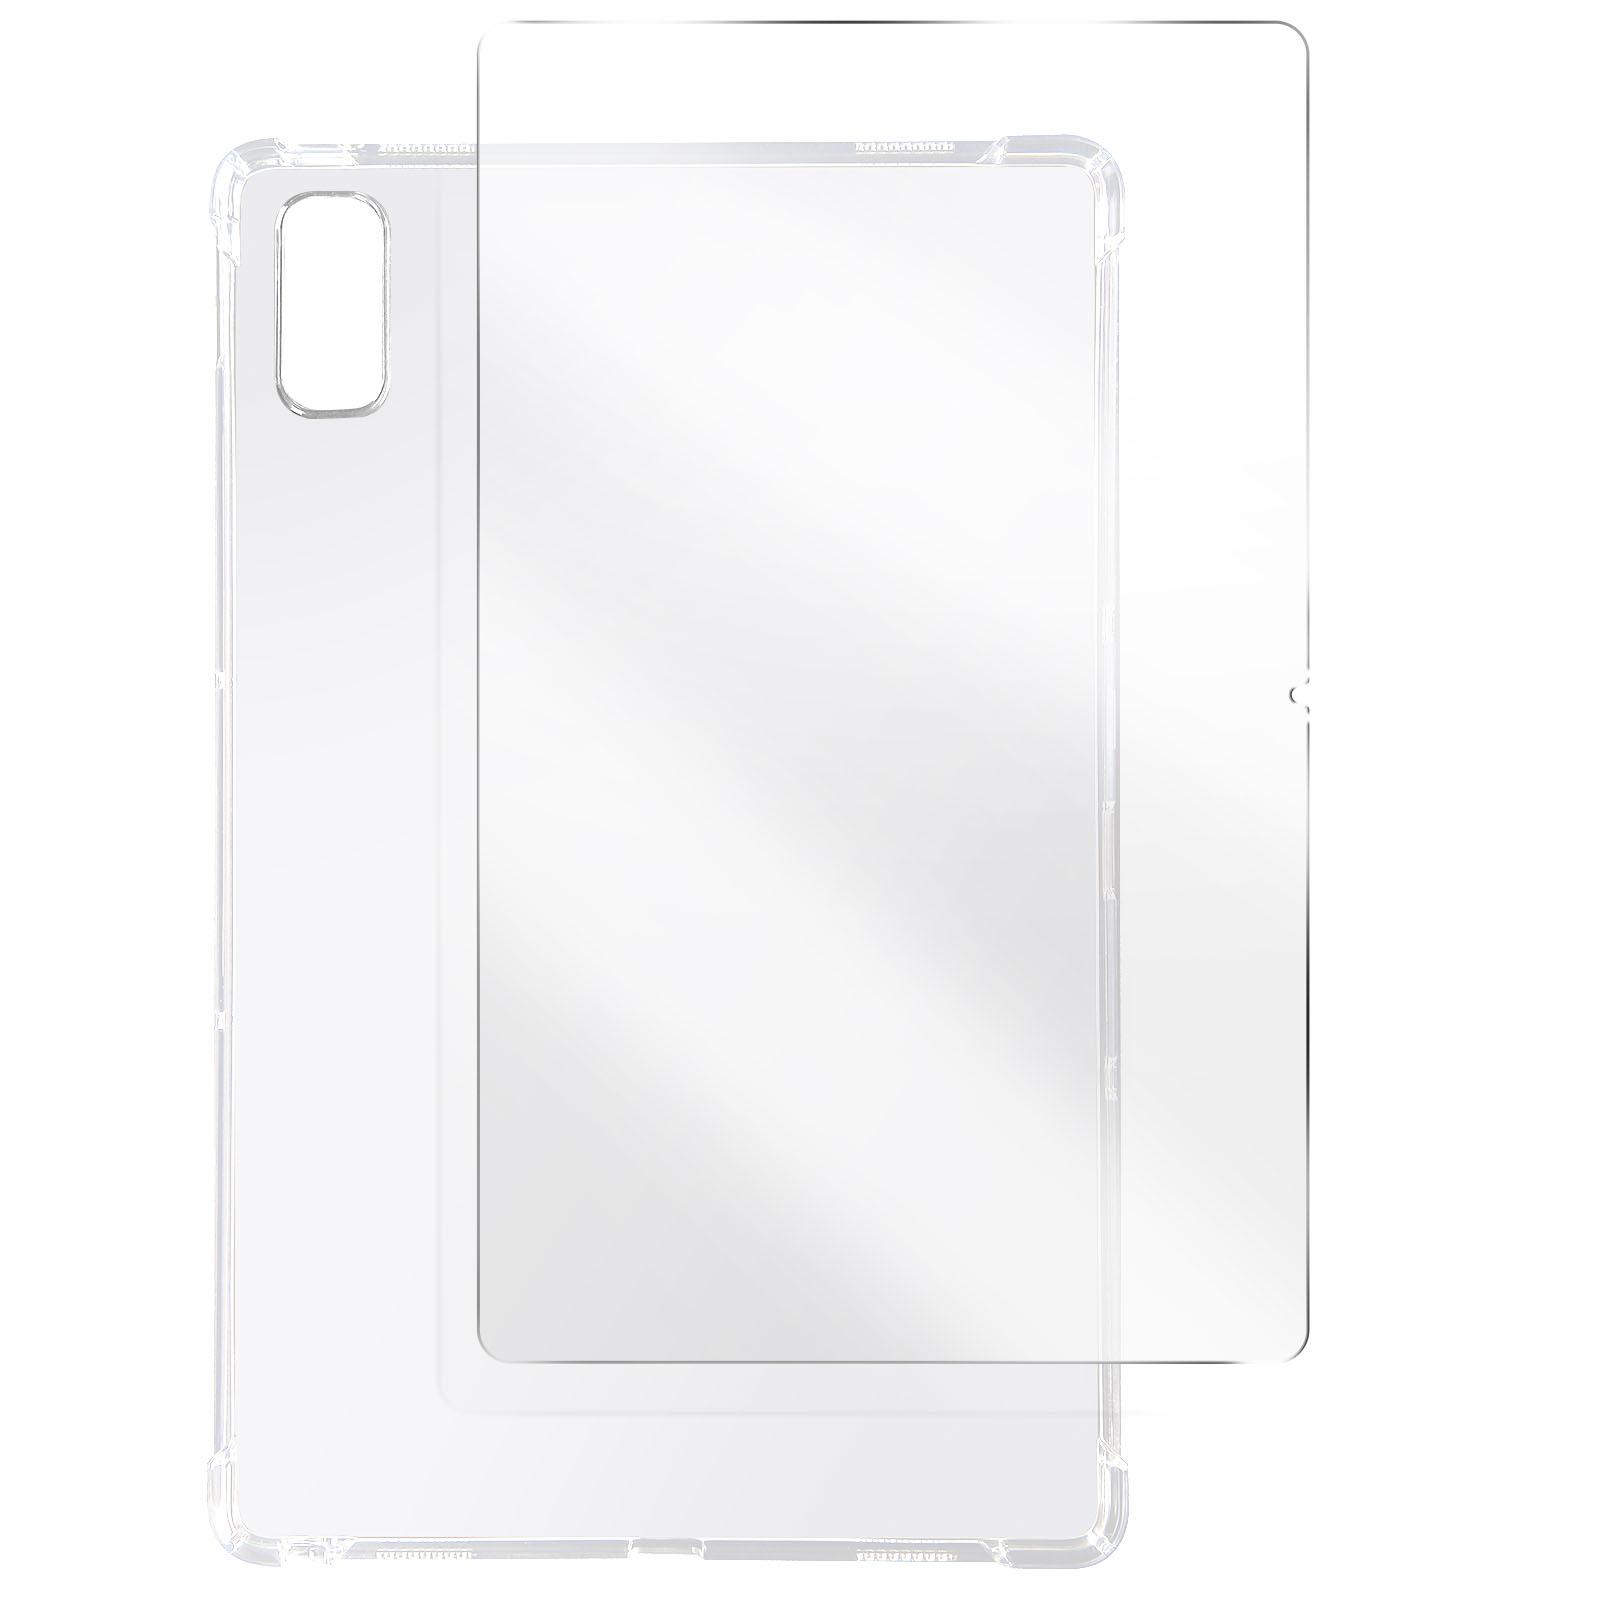 AVIZAR Premium Schutz-Set: Backcover Transparent + Silikongel für Folie Hülle Lenovo Glas, Schutz-Sets Series Gehärtetes und